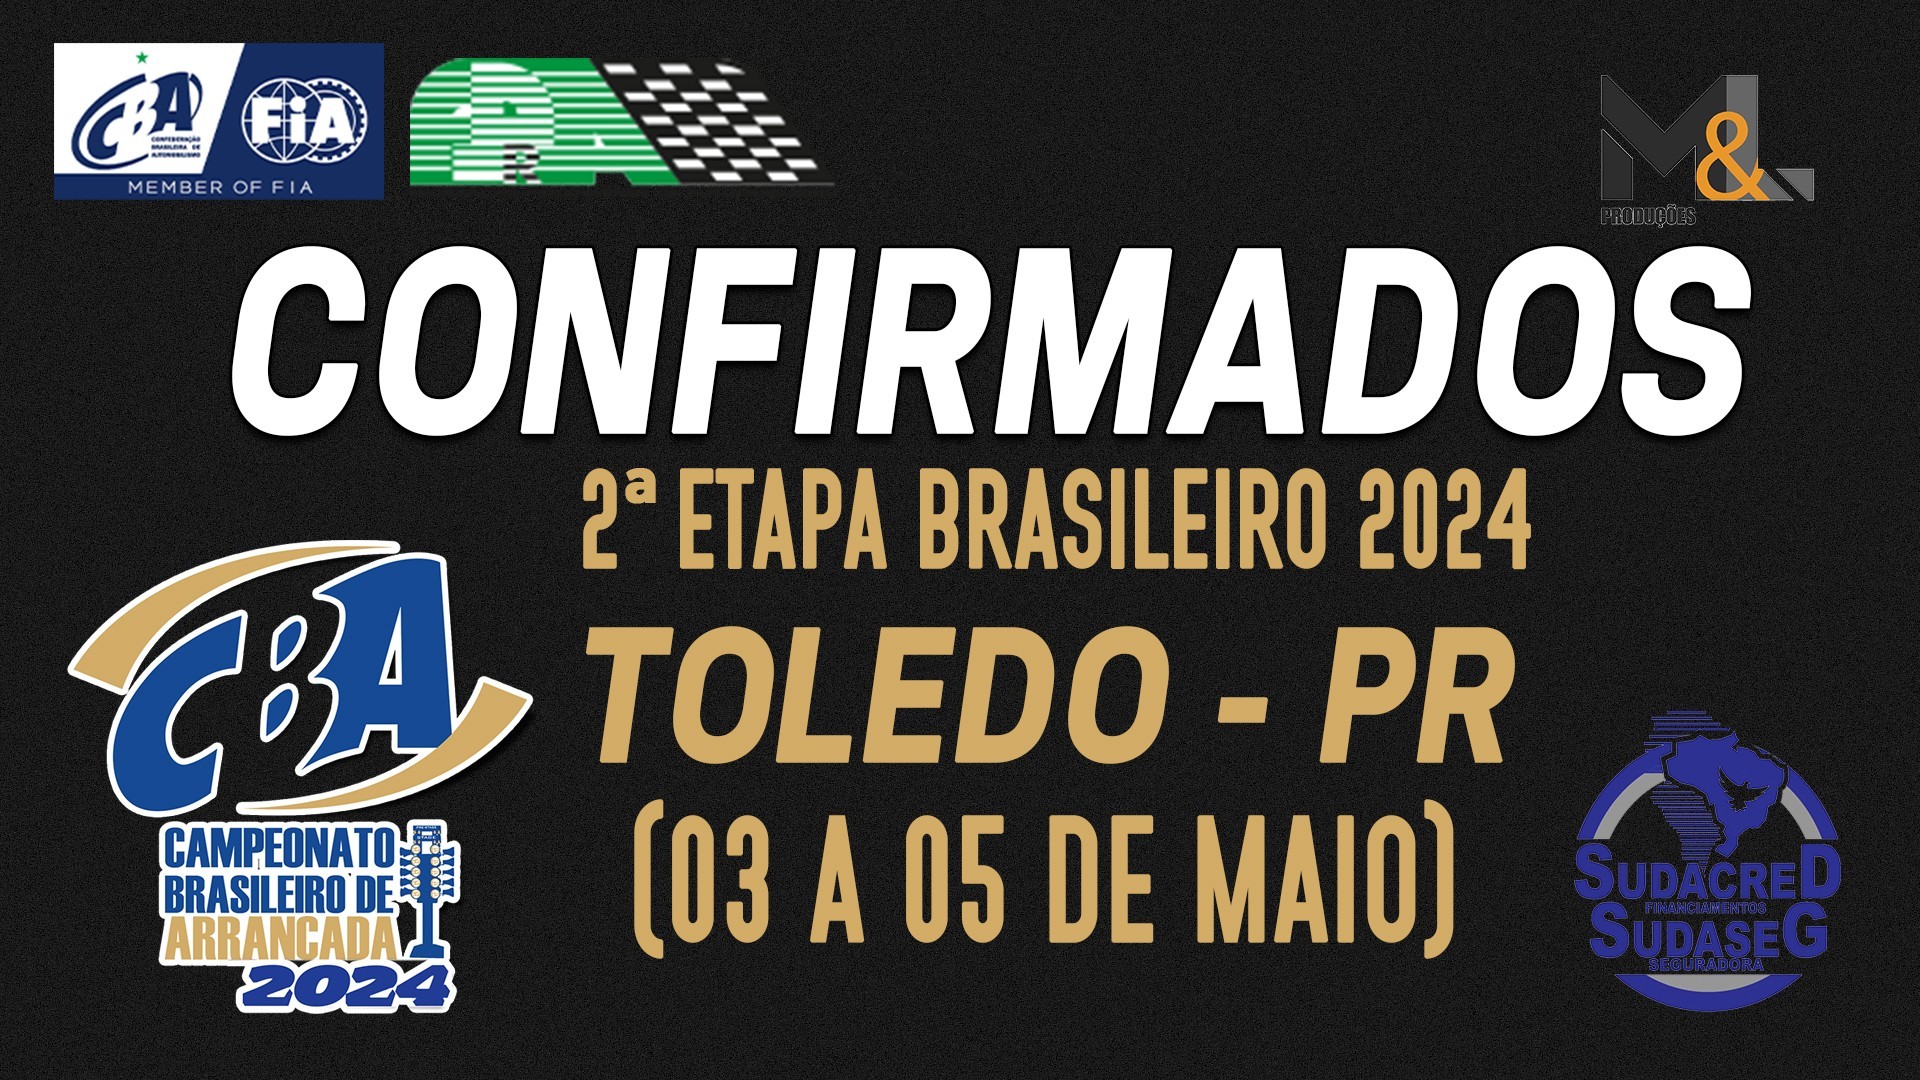 Confirmados 2ª Etapa Campeonato Brasileiro de Arrancada 2024 - Toledo - PR